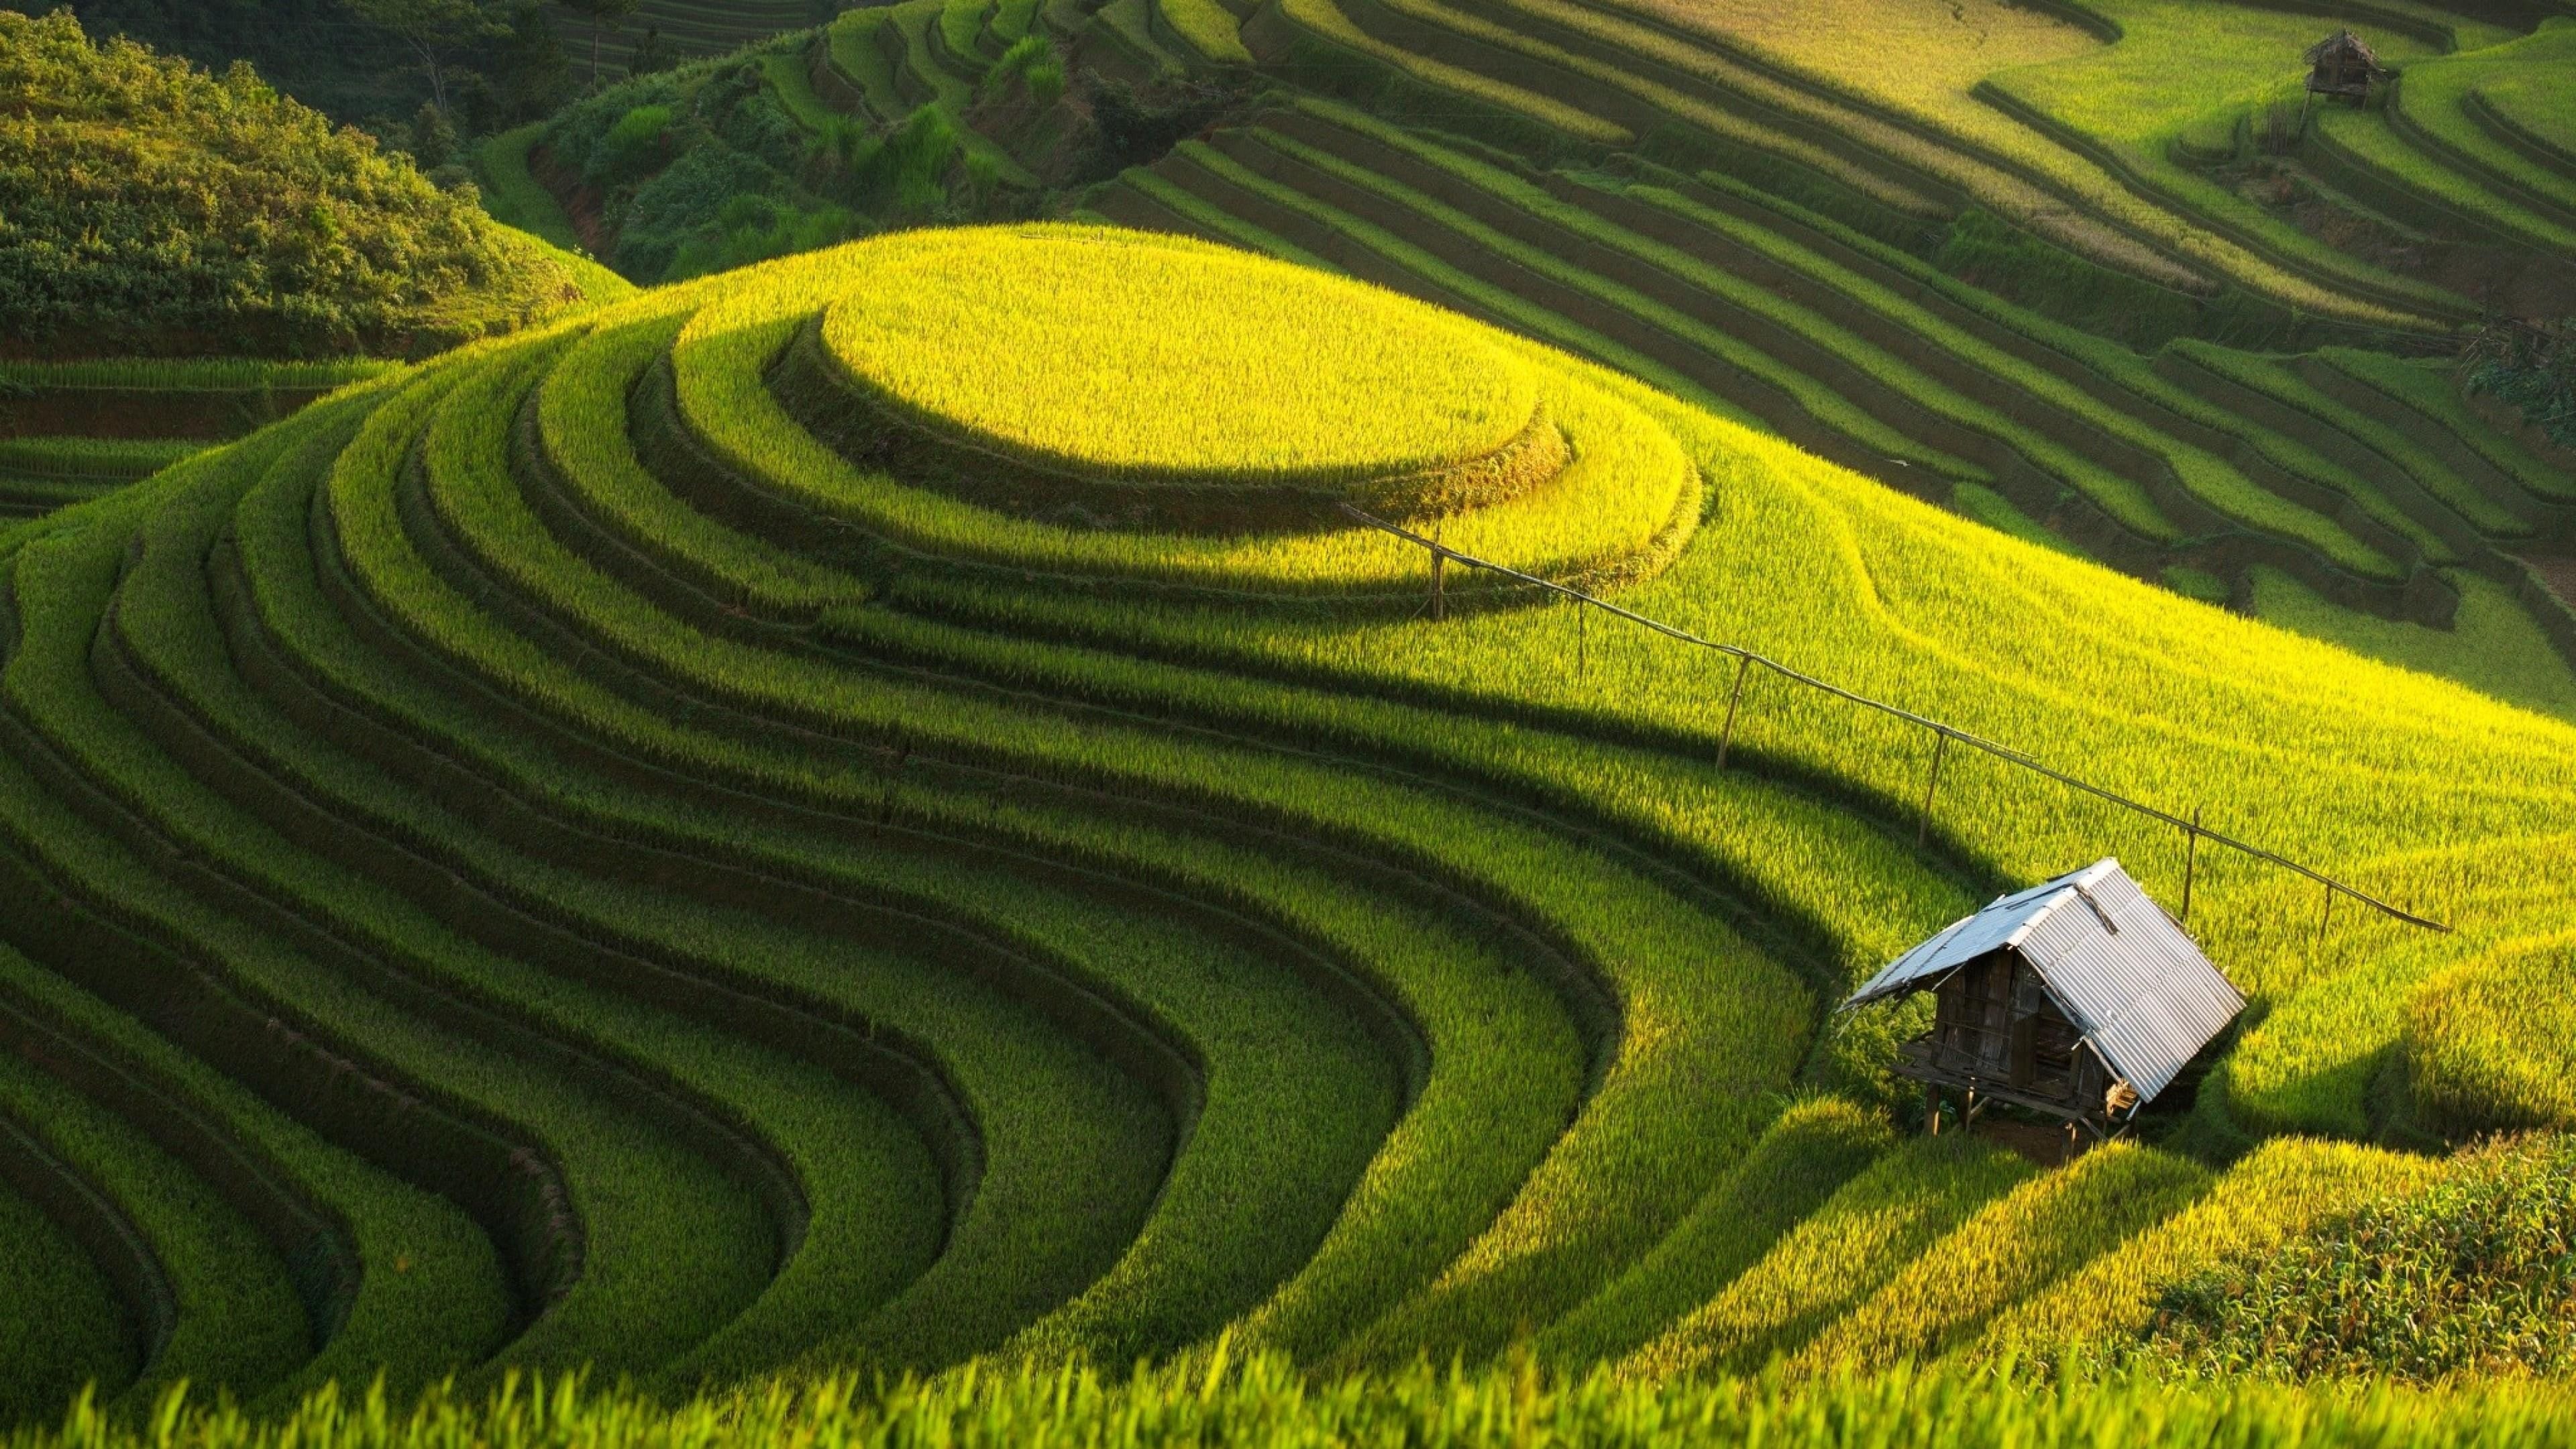 Rice fields in Vietnam, Terraced beauty, Green farm serenity, Nature's masterpiece, 3840x2160 4K Desktop